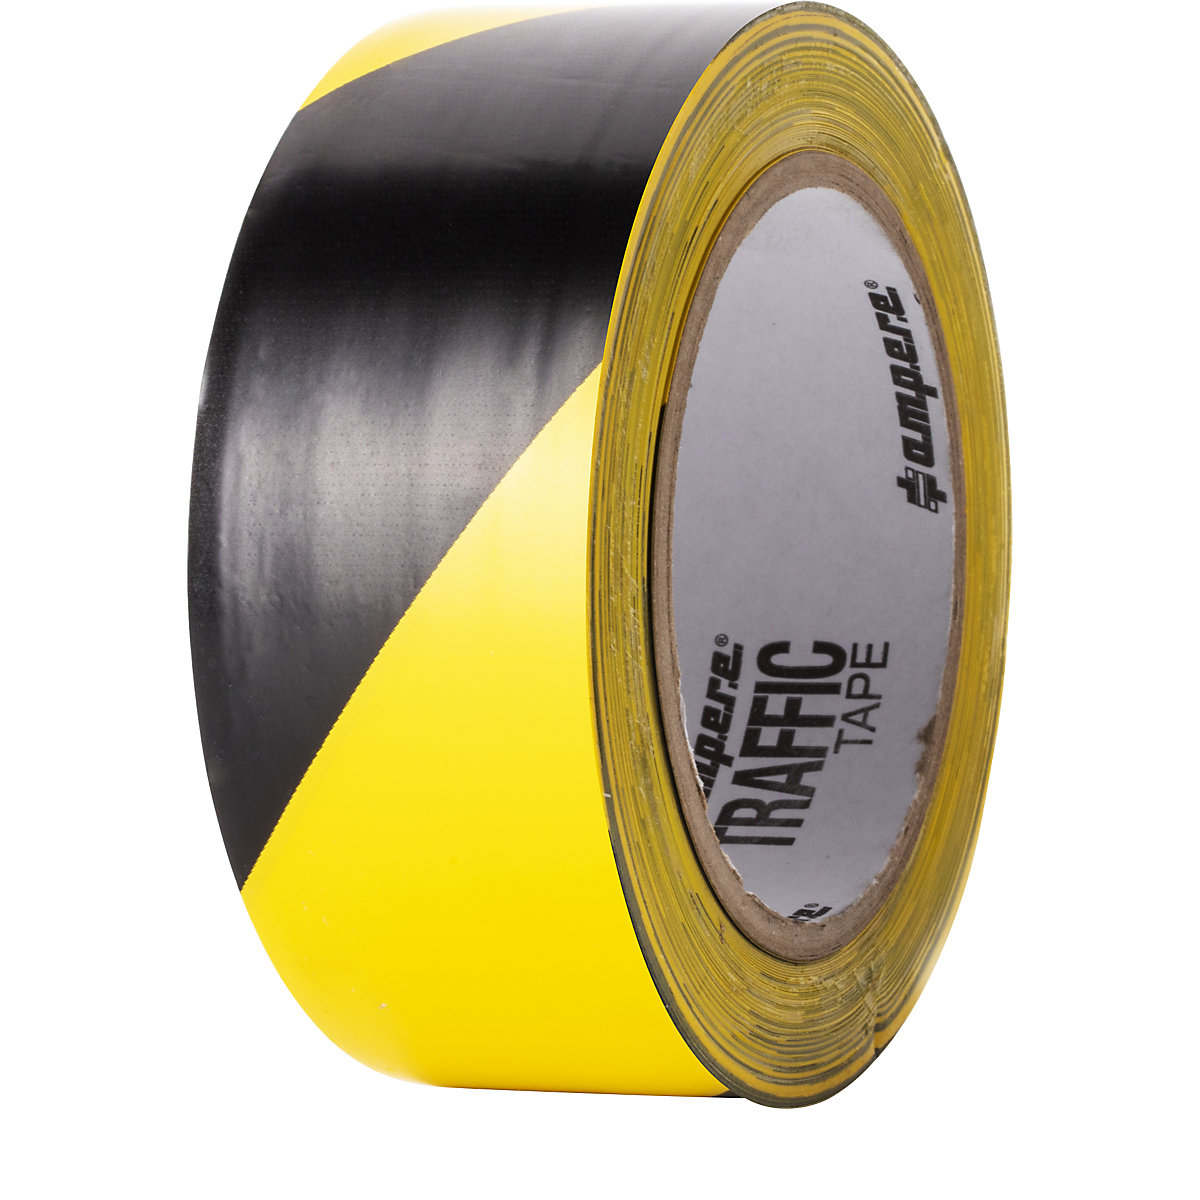 Bande de marquage de sol – Ampere, largeur 50 mm, jaune/noir